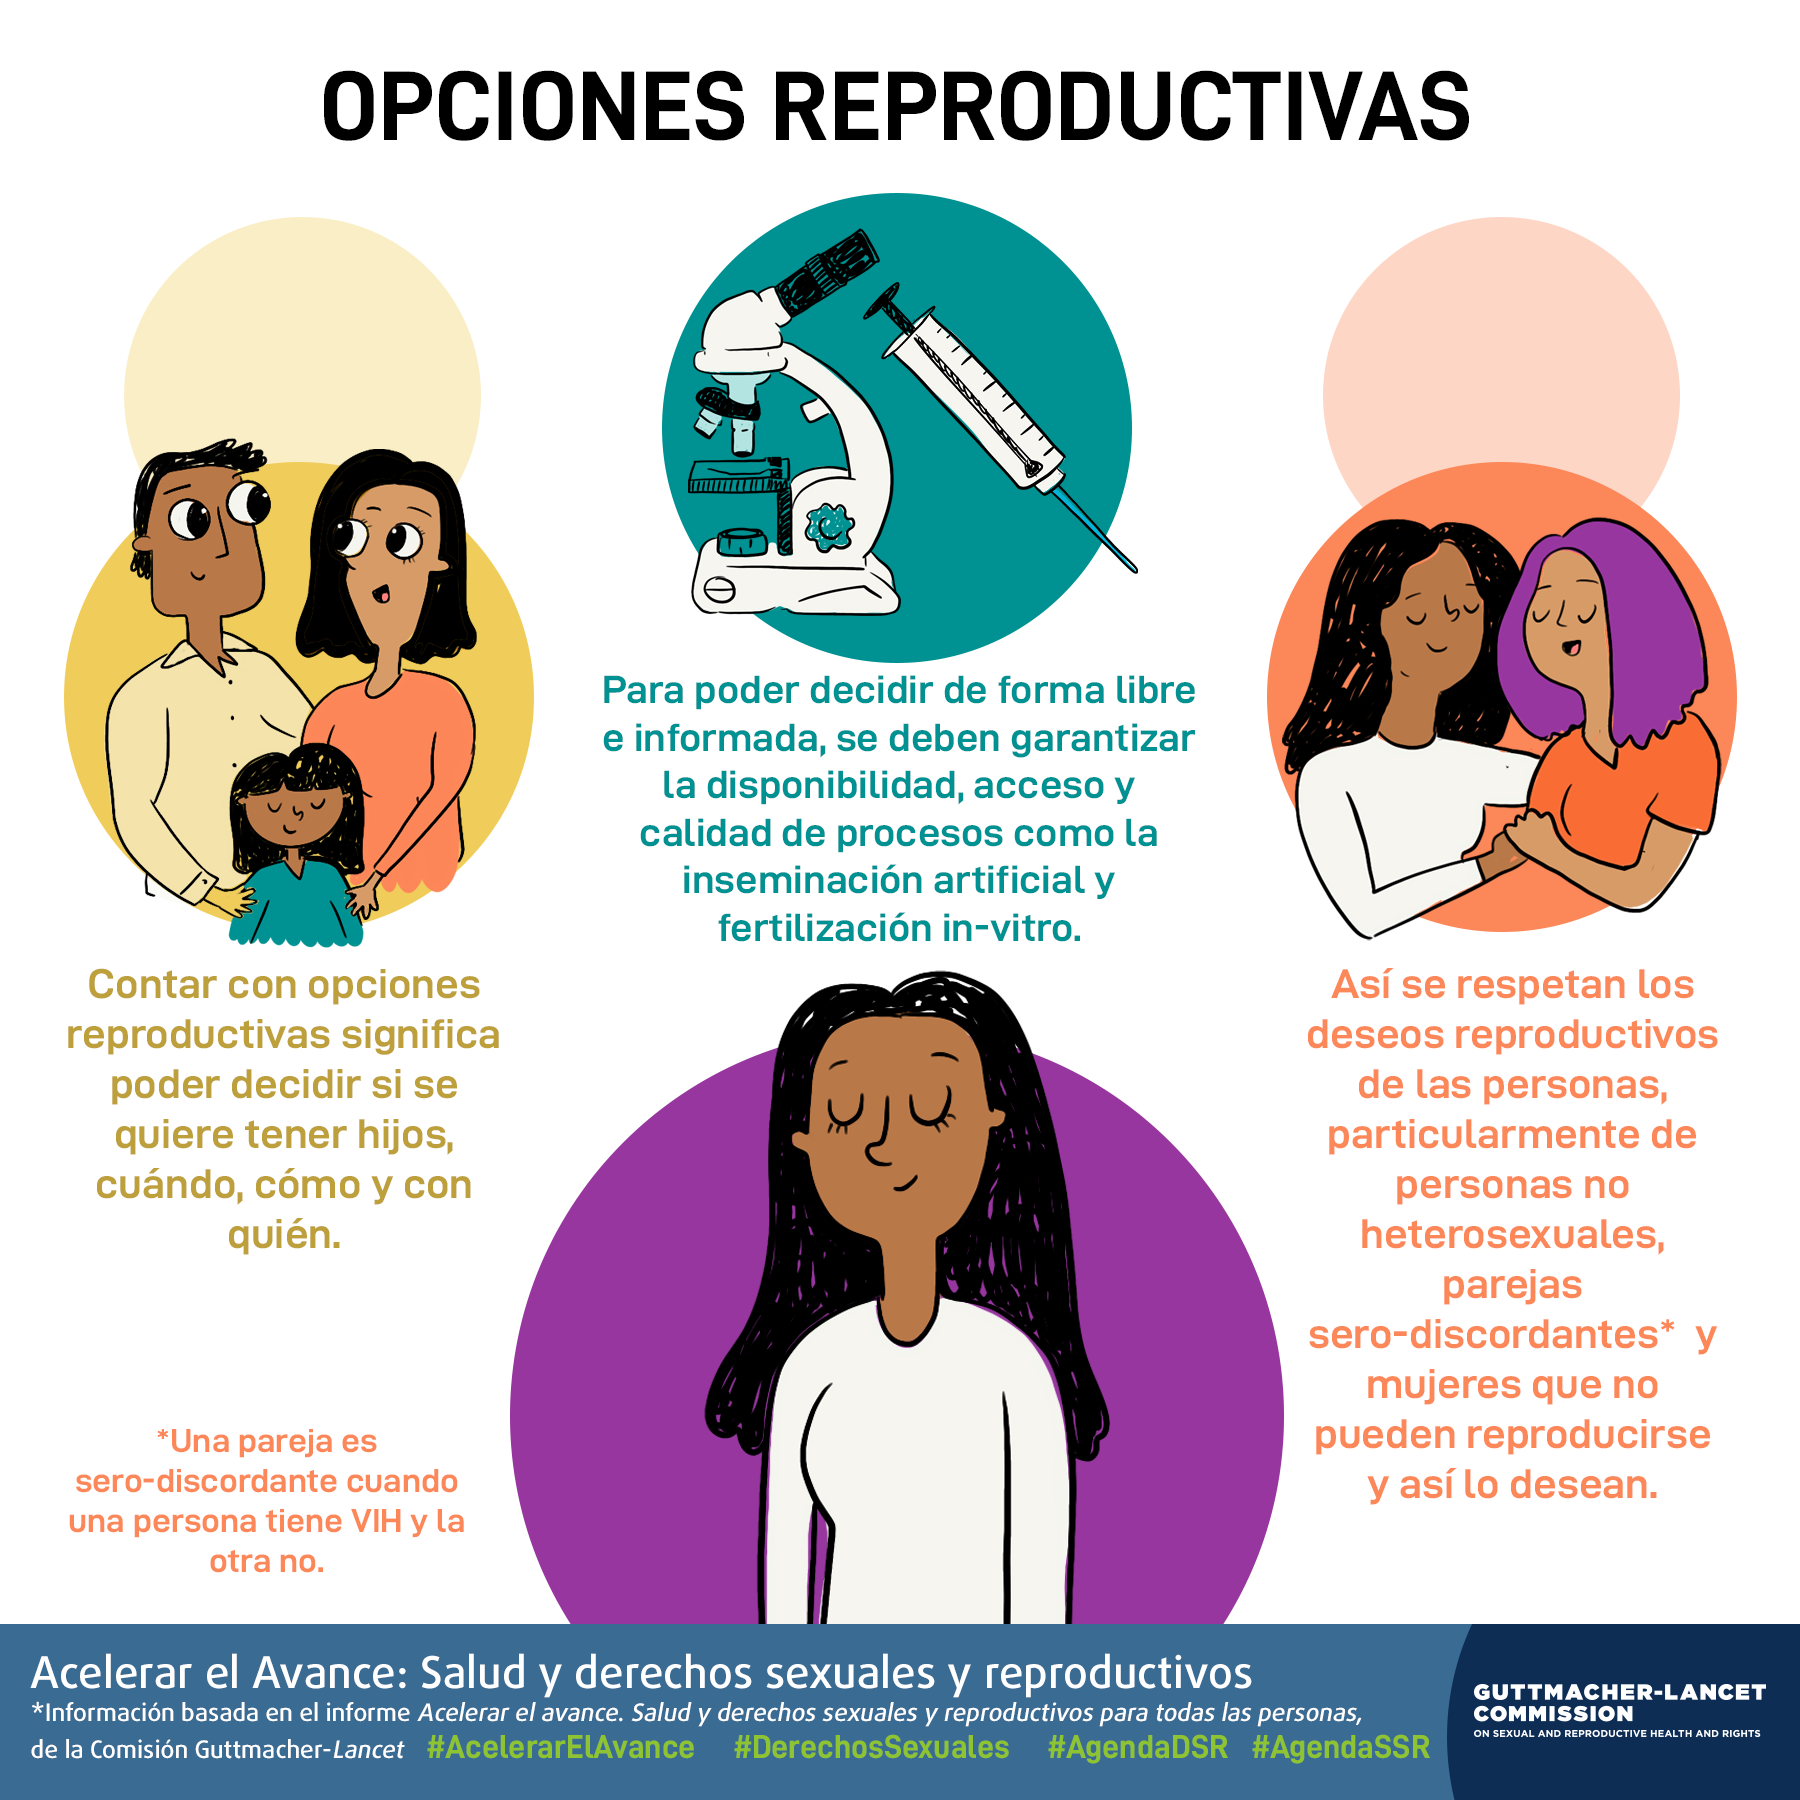 Esta es una infografía cuyo tema son las opciones reproductivas de las mujeres*.